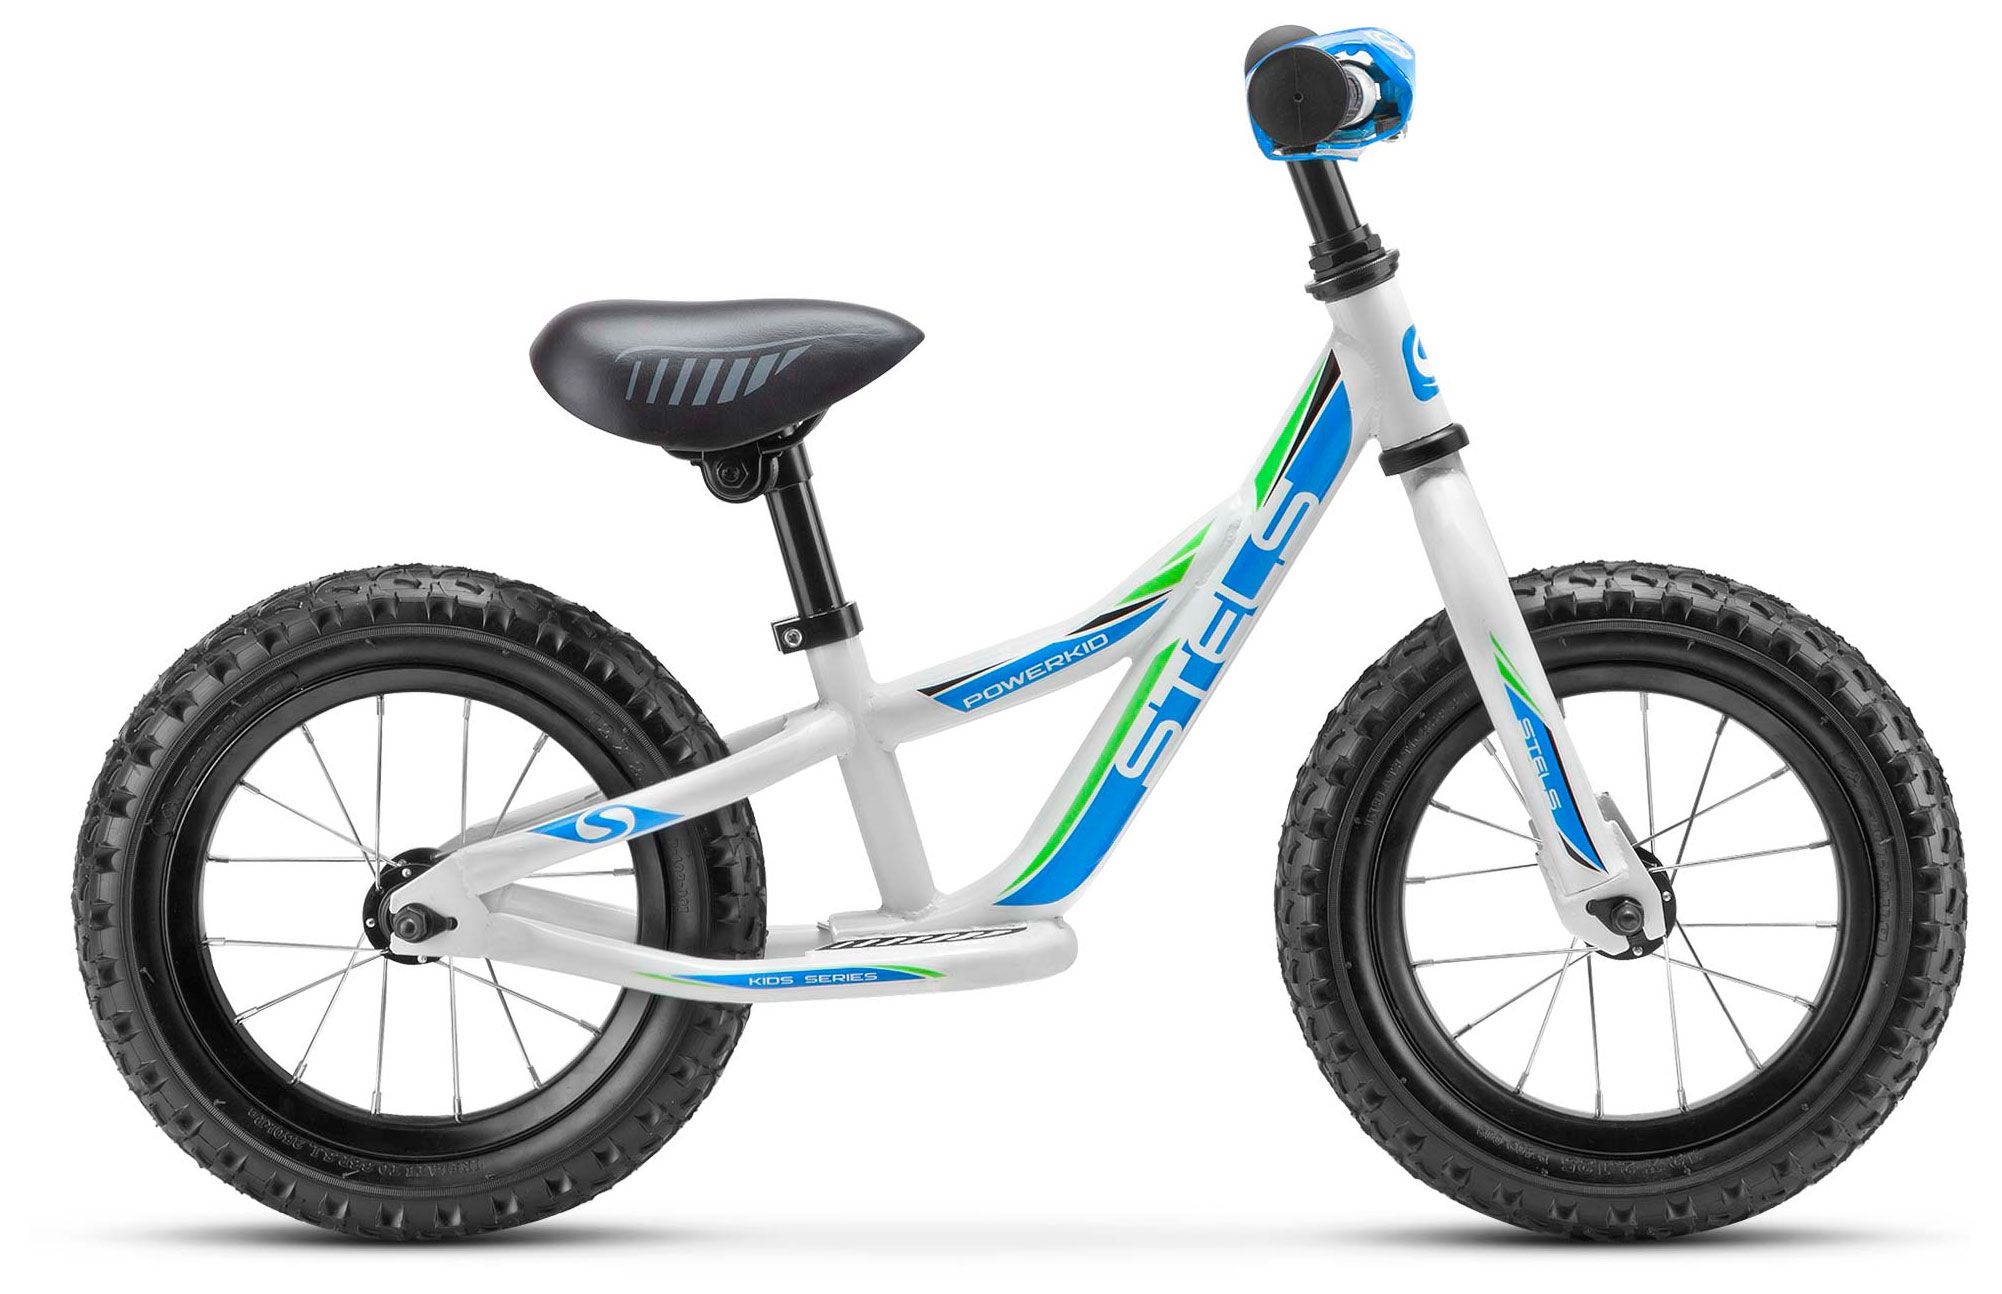  Отзывы о Детском велосипеде Stels Powerkid 12 (Boy) V020 2018